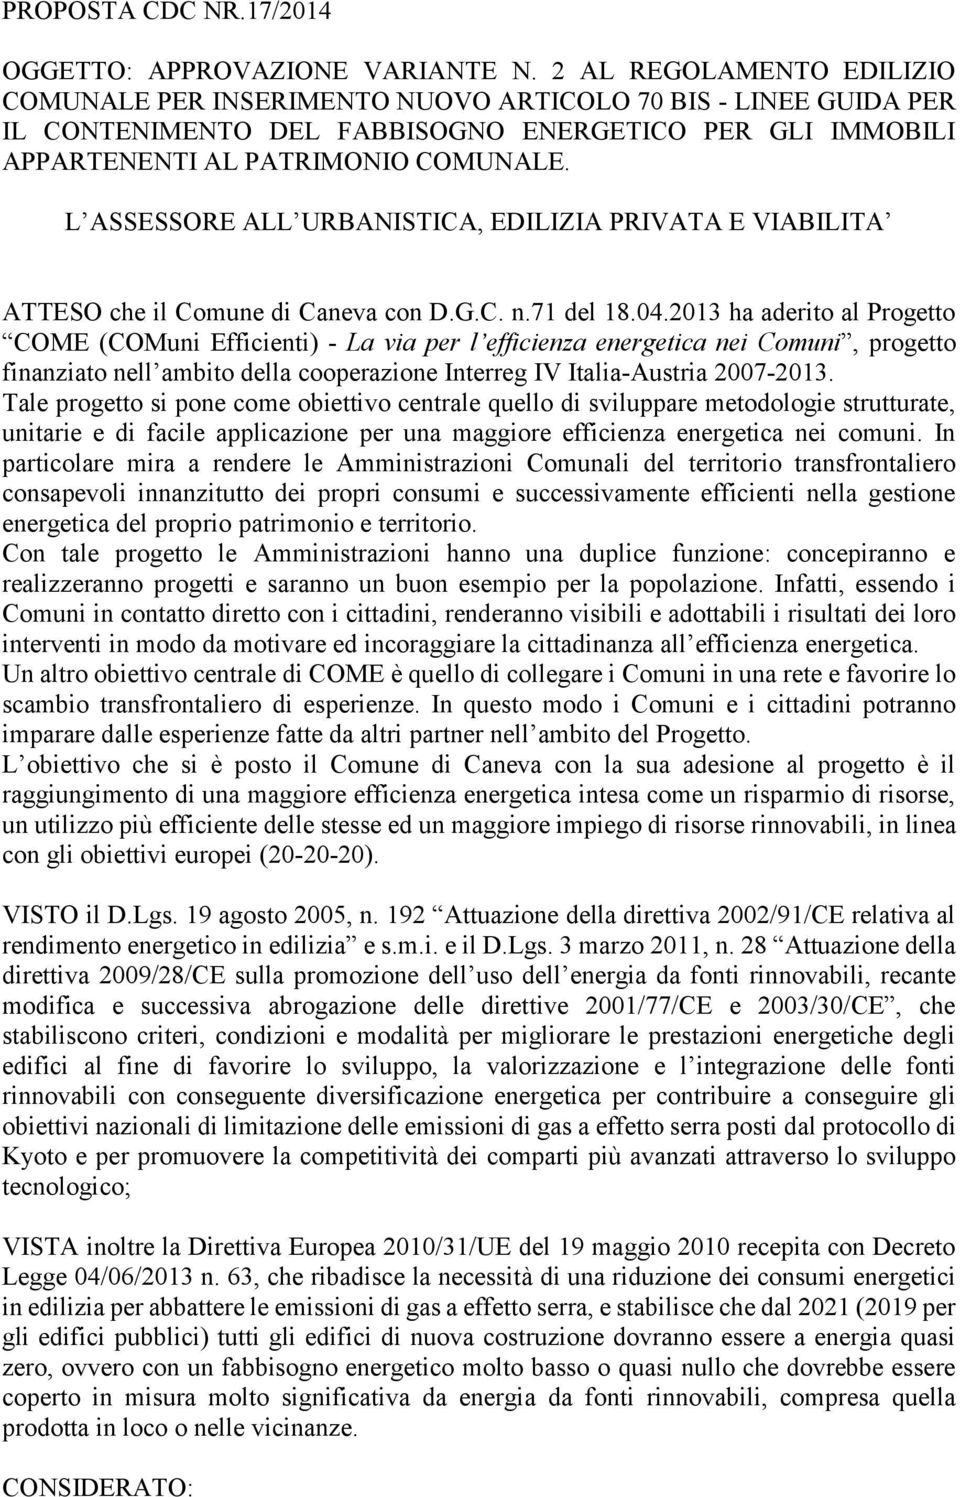 L ASSESSORE ALL URBANISTICA, EDILIZIA PRIVATA E VIABILITA ATTESO che il Comune di Caneva con D.G.C. n.71 del 18.04.